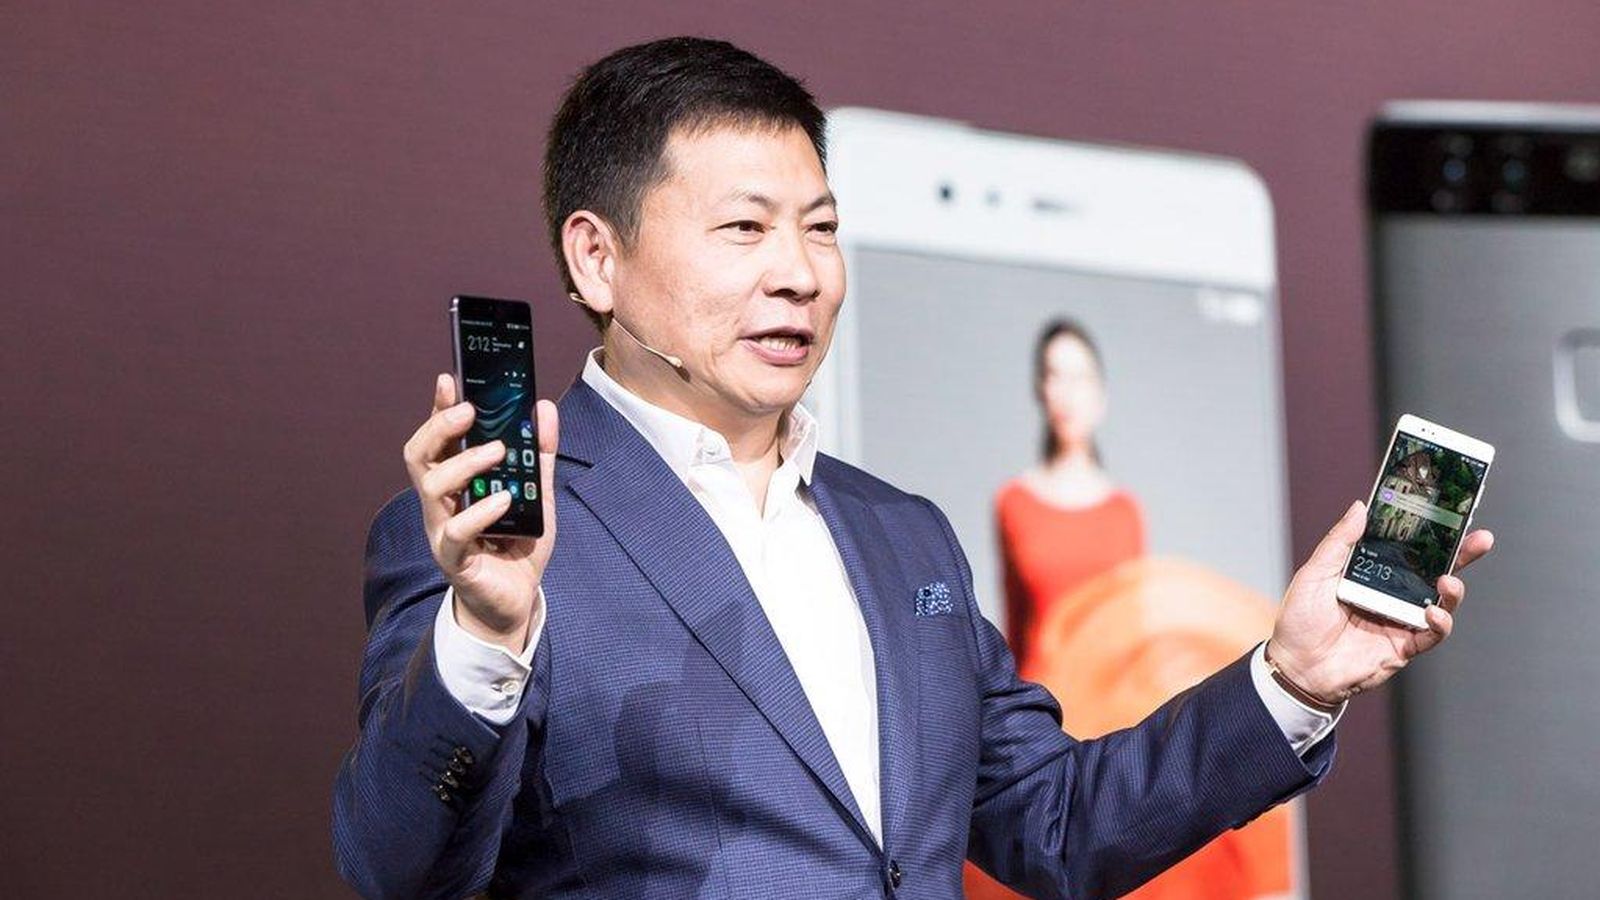 Foto: Richard Yu, jefe de la unidad de móviles de Huawei, presenta los nuevos P9 y P9 Plus.